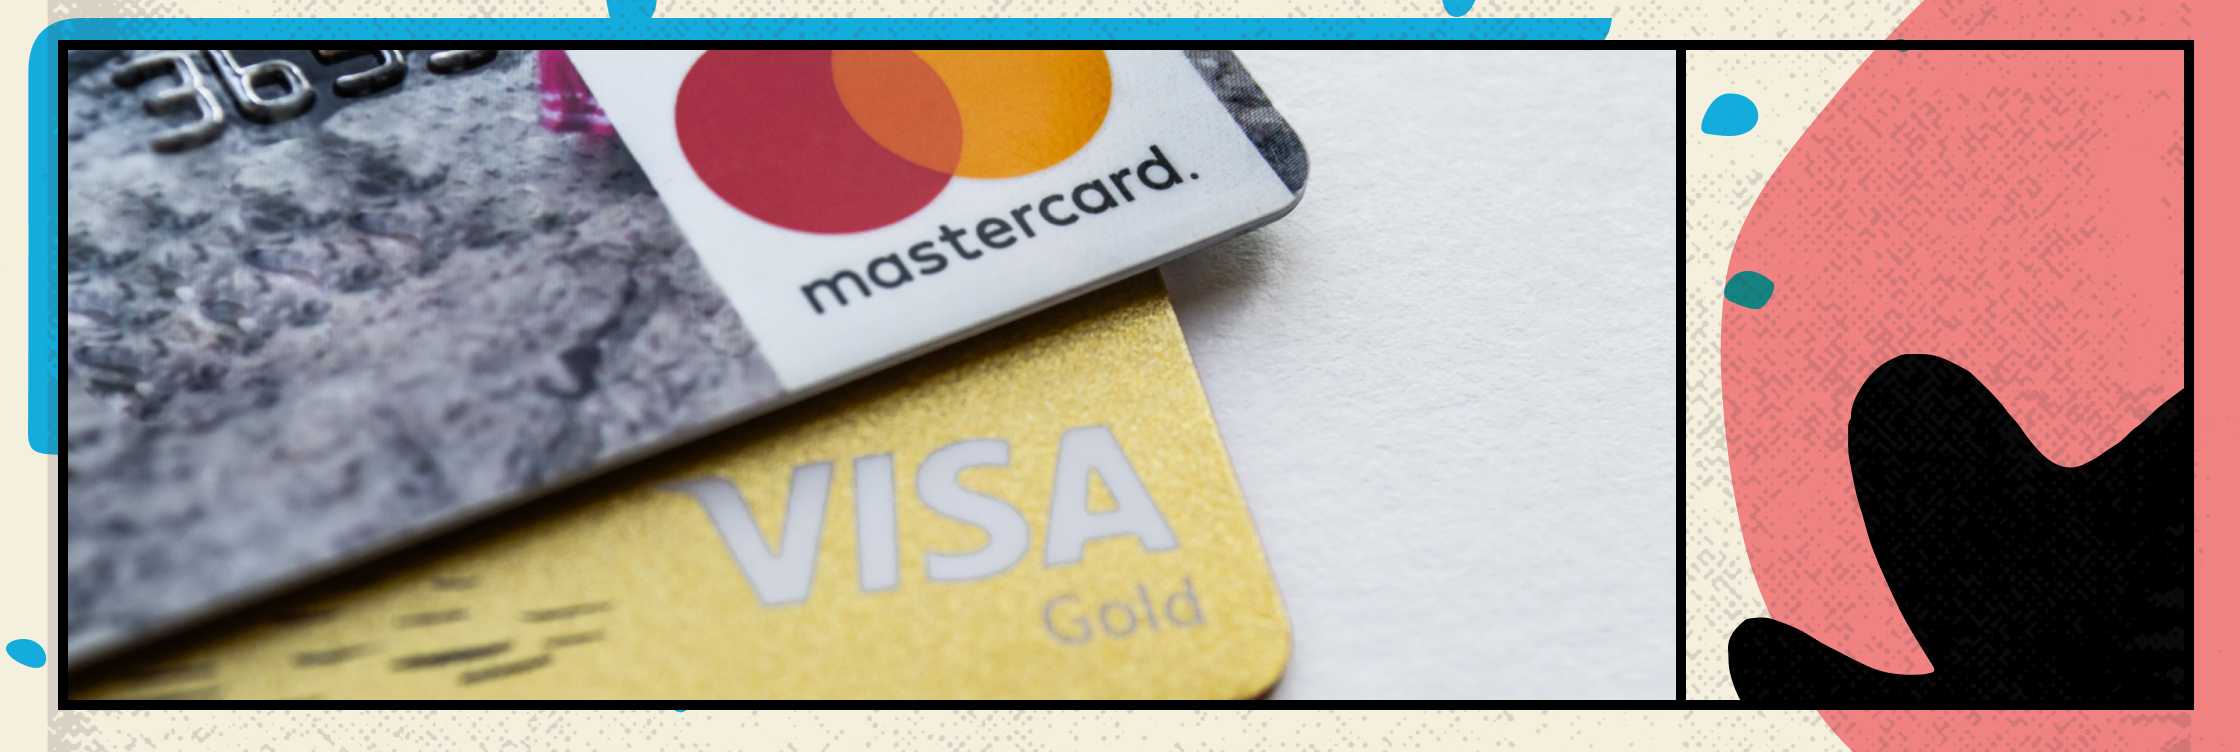 El Bitcoin es el segundo en volumen de transacciones después de Visa y Mastercard